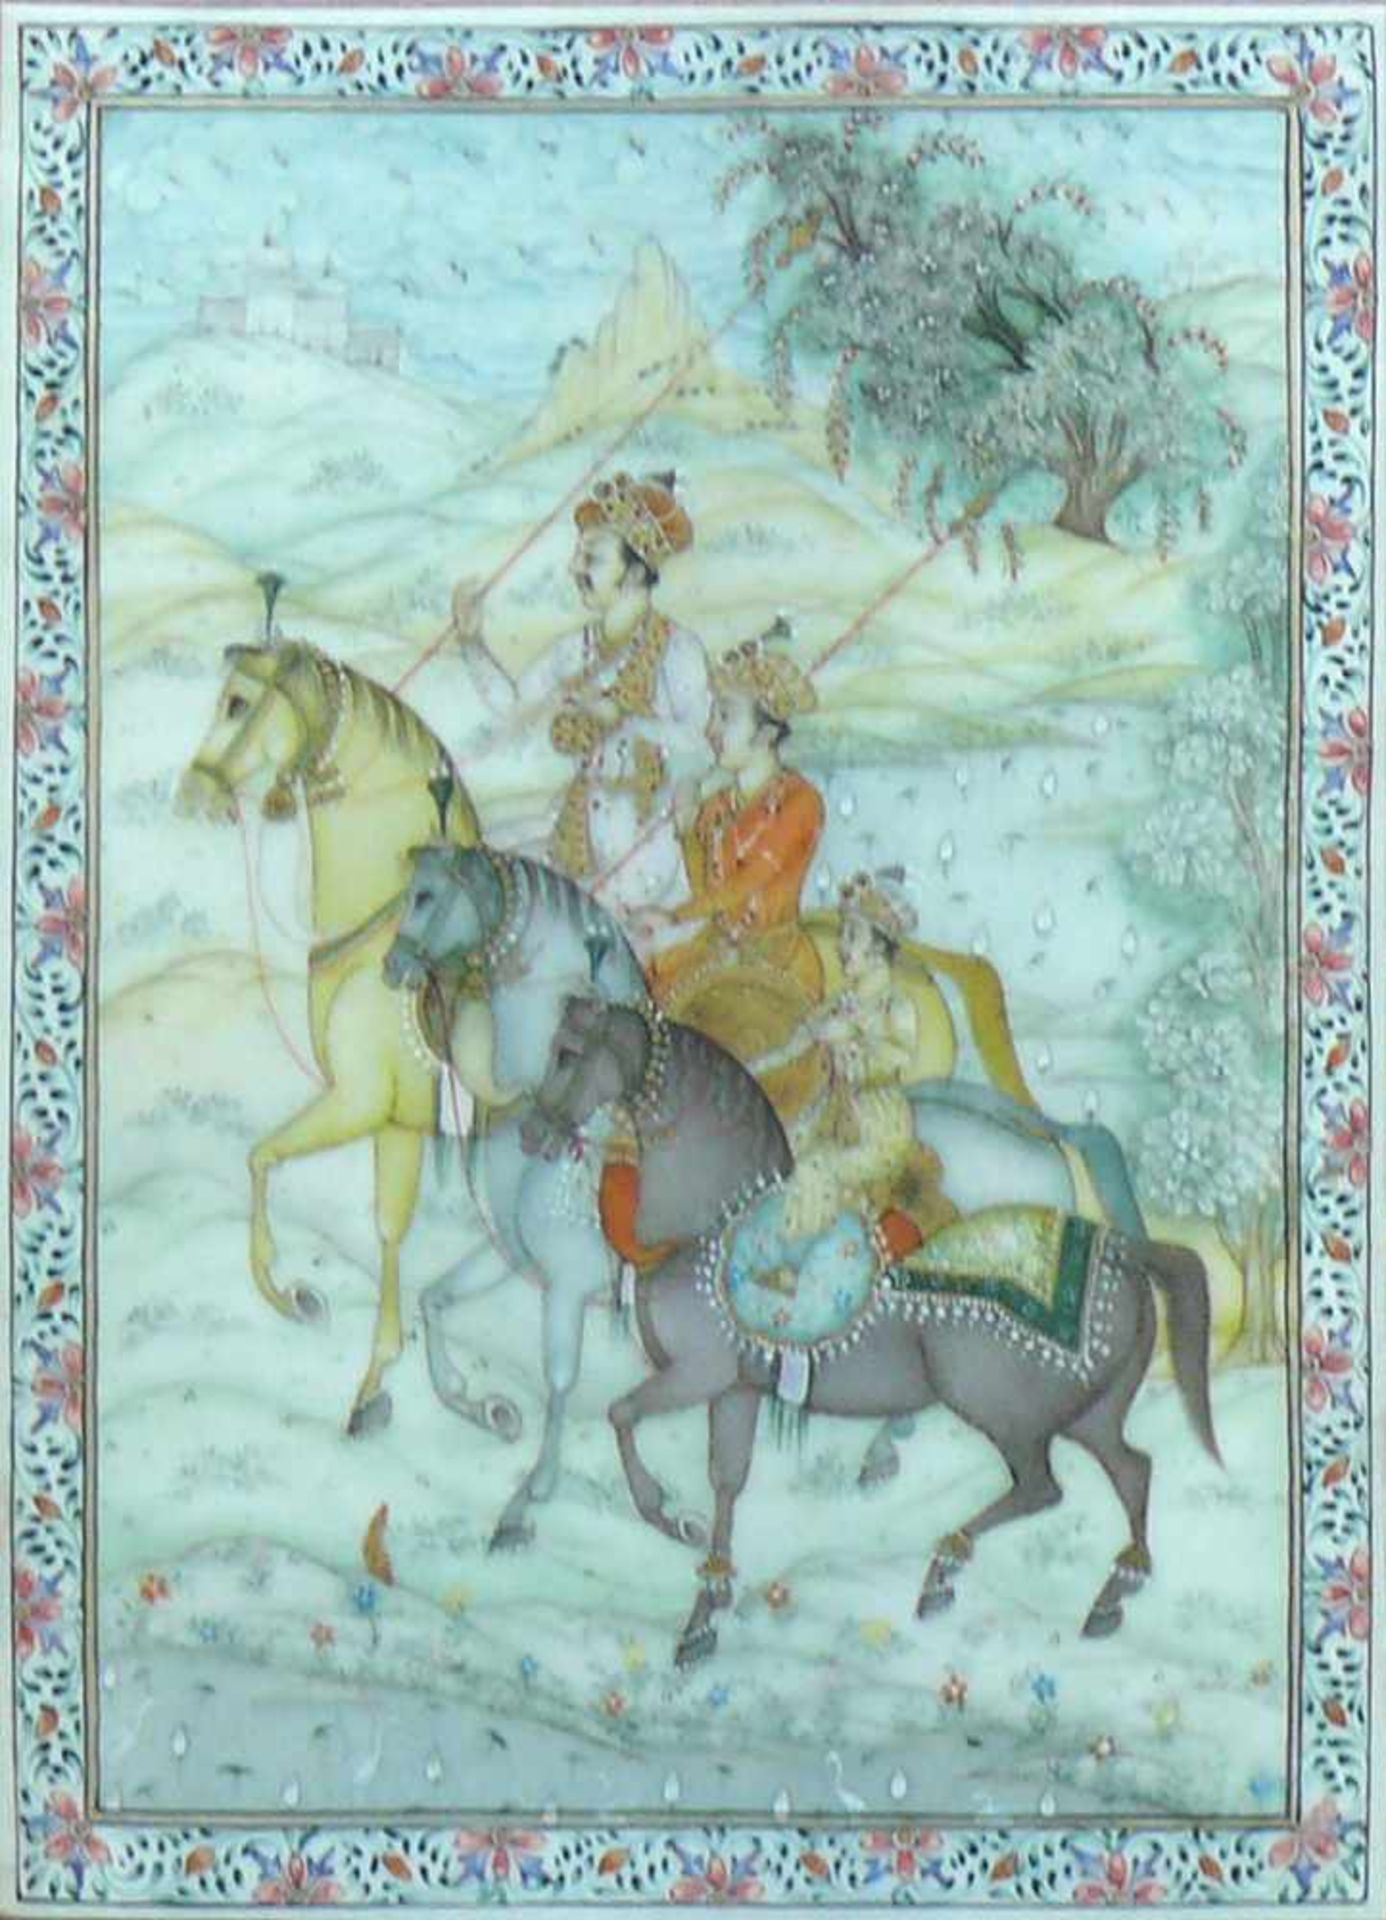 Miniatur-Bild (Persien) "3 Reiter in Landschaft"; Mischtechnik/Elfenbein; ca. 15 x 11 cm; unter Glas